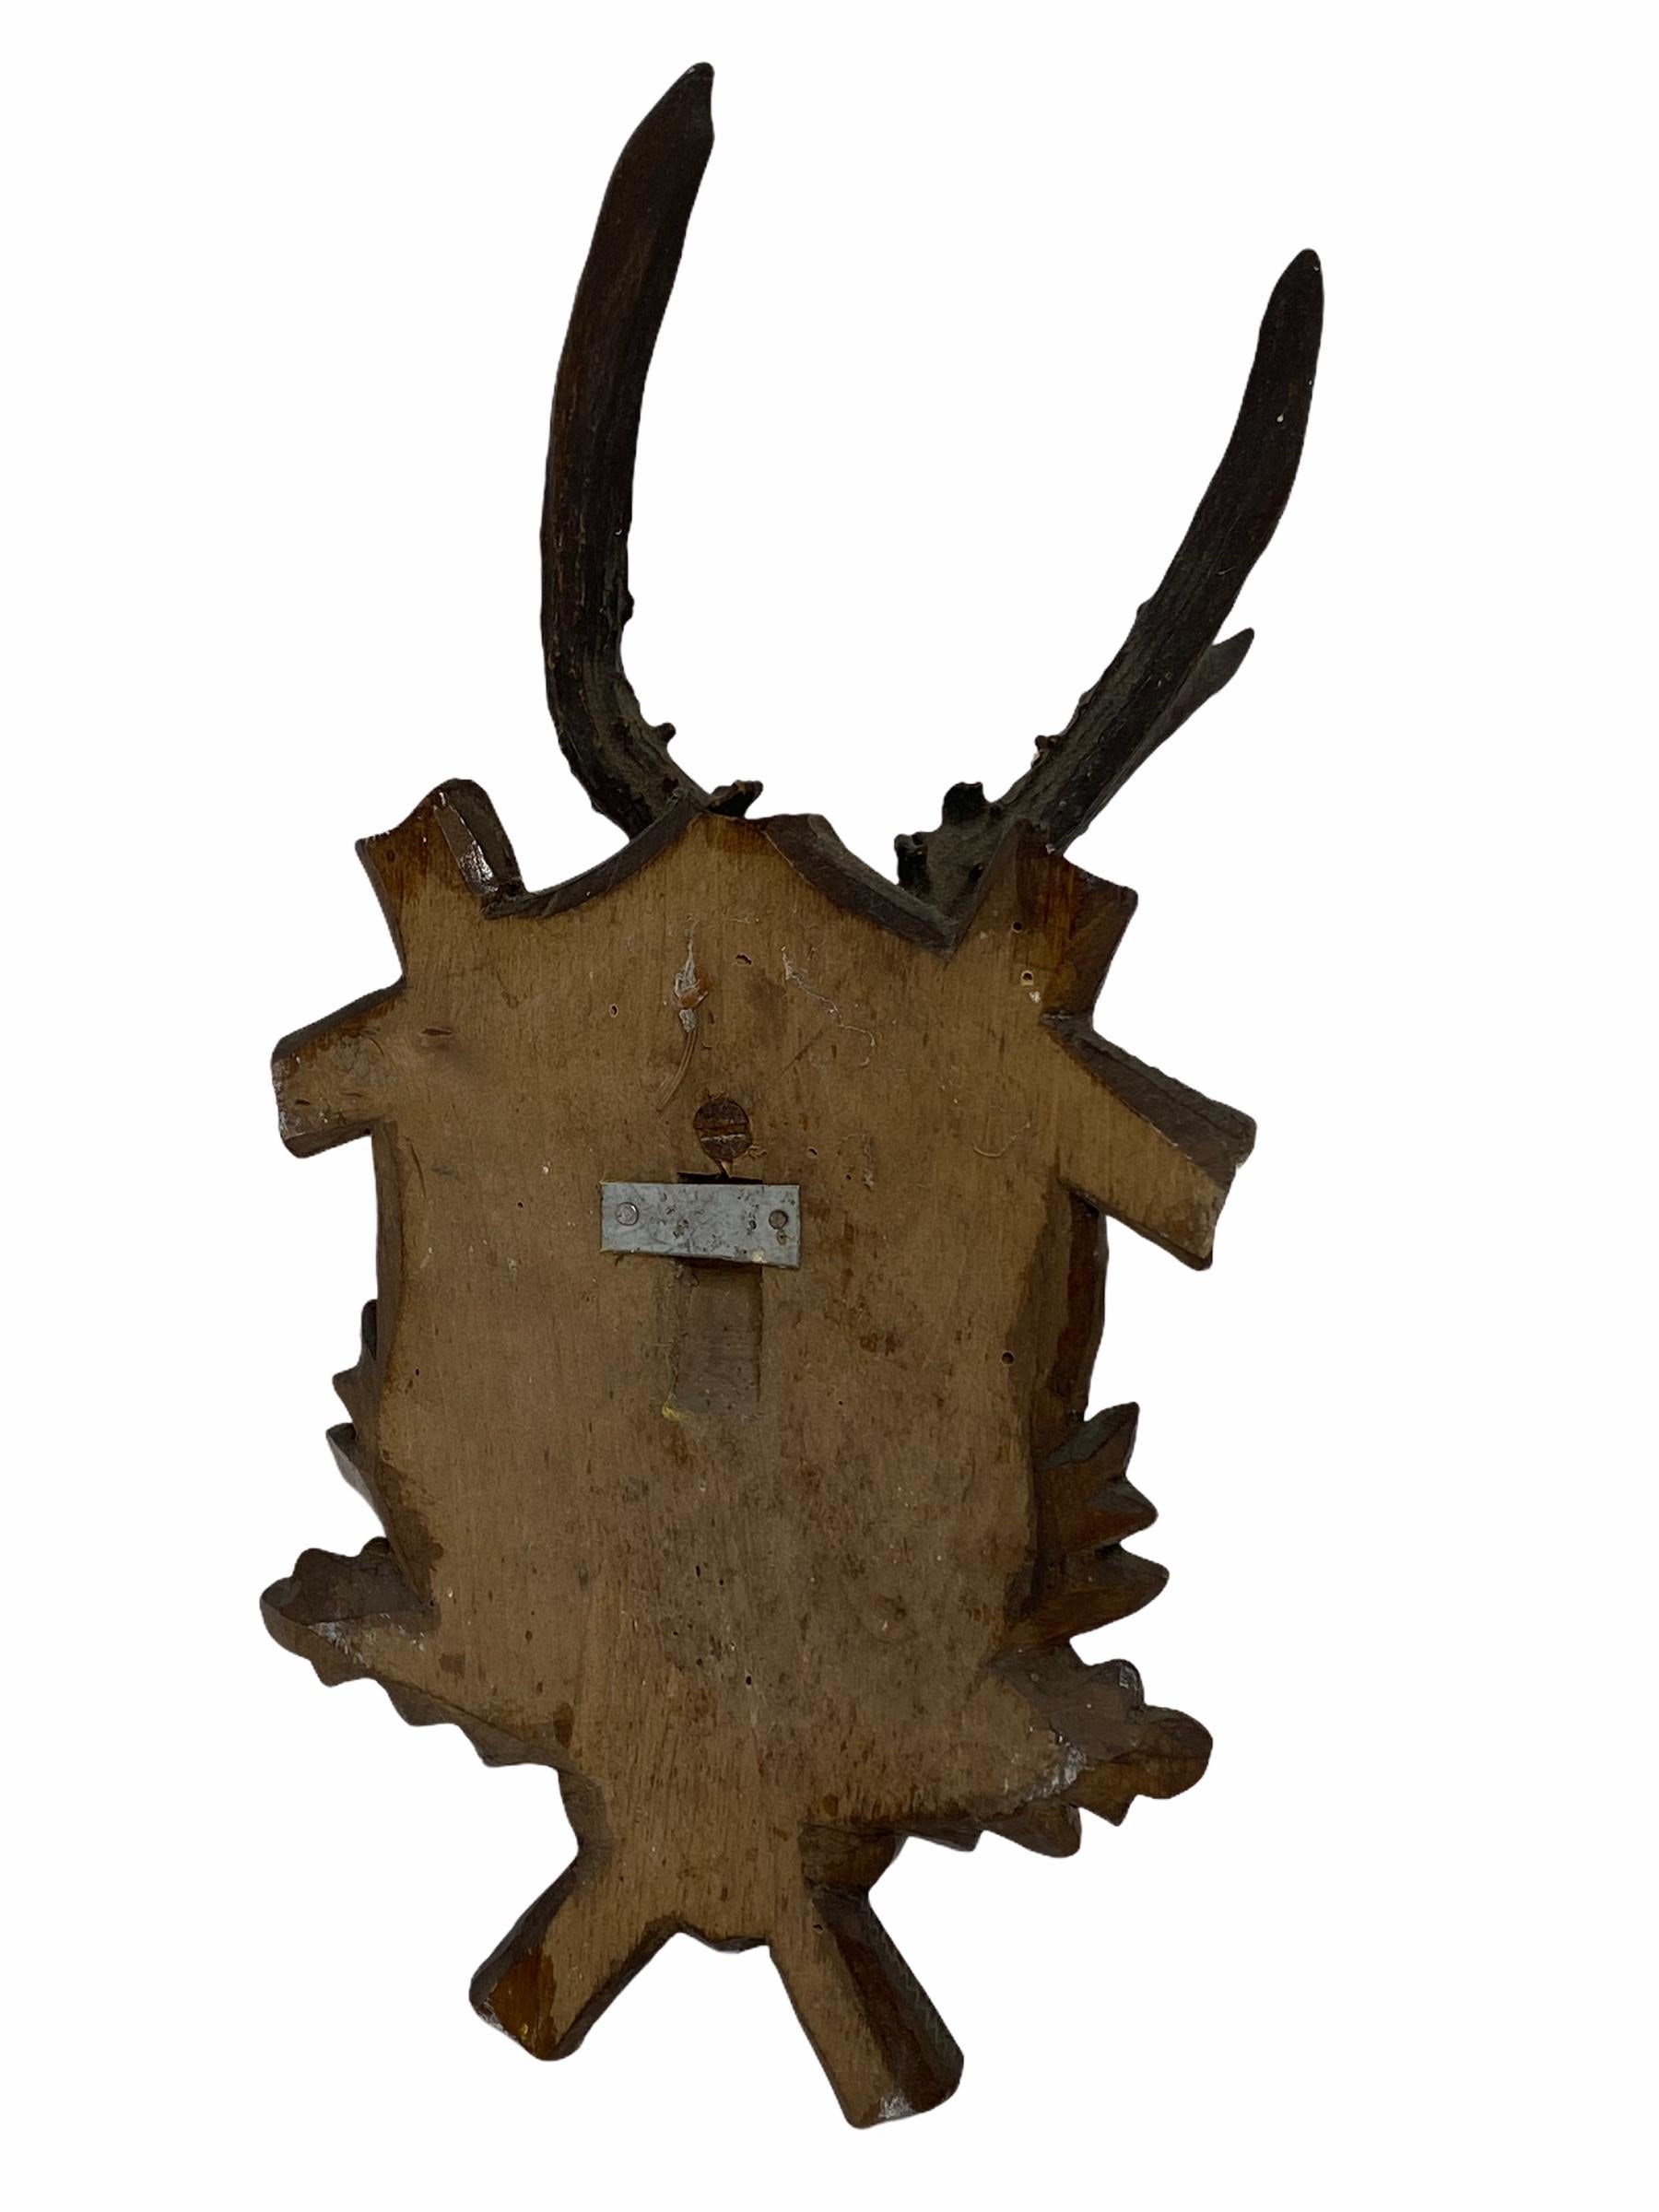 Hand-Carved Antique Black Forest Deer Antler Trophy on Wood Carved Plaque, Austria, 1890s